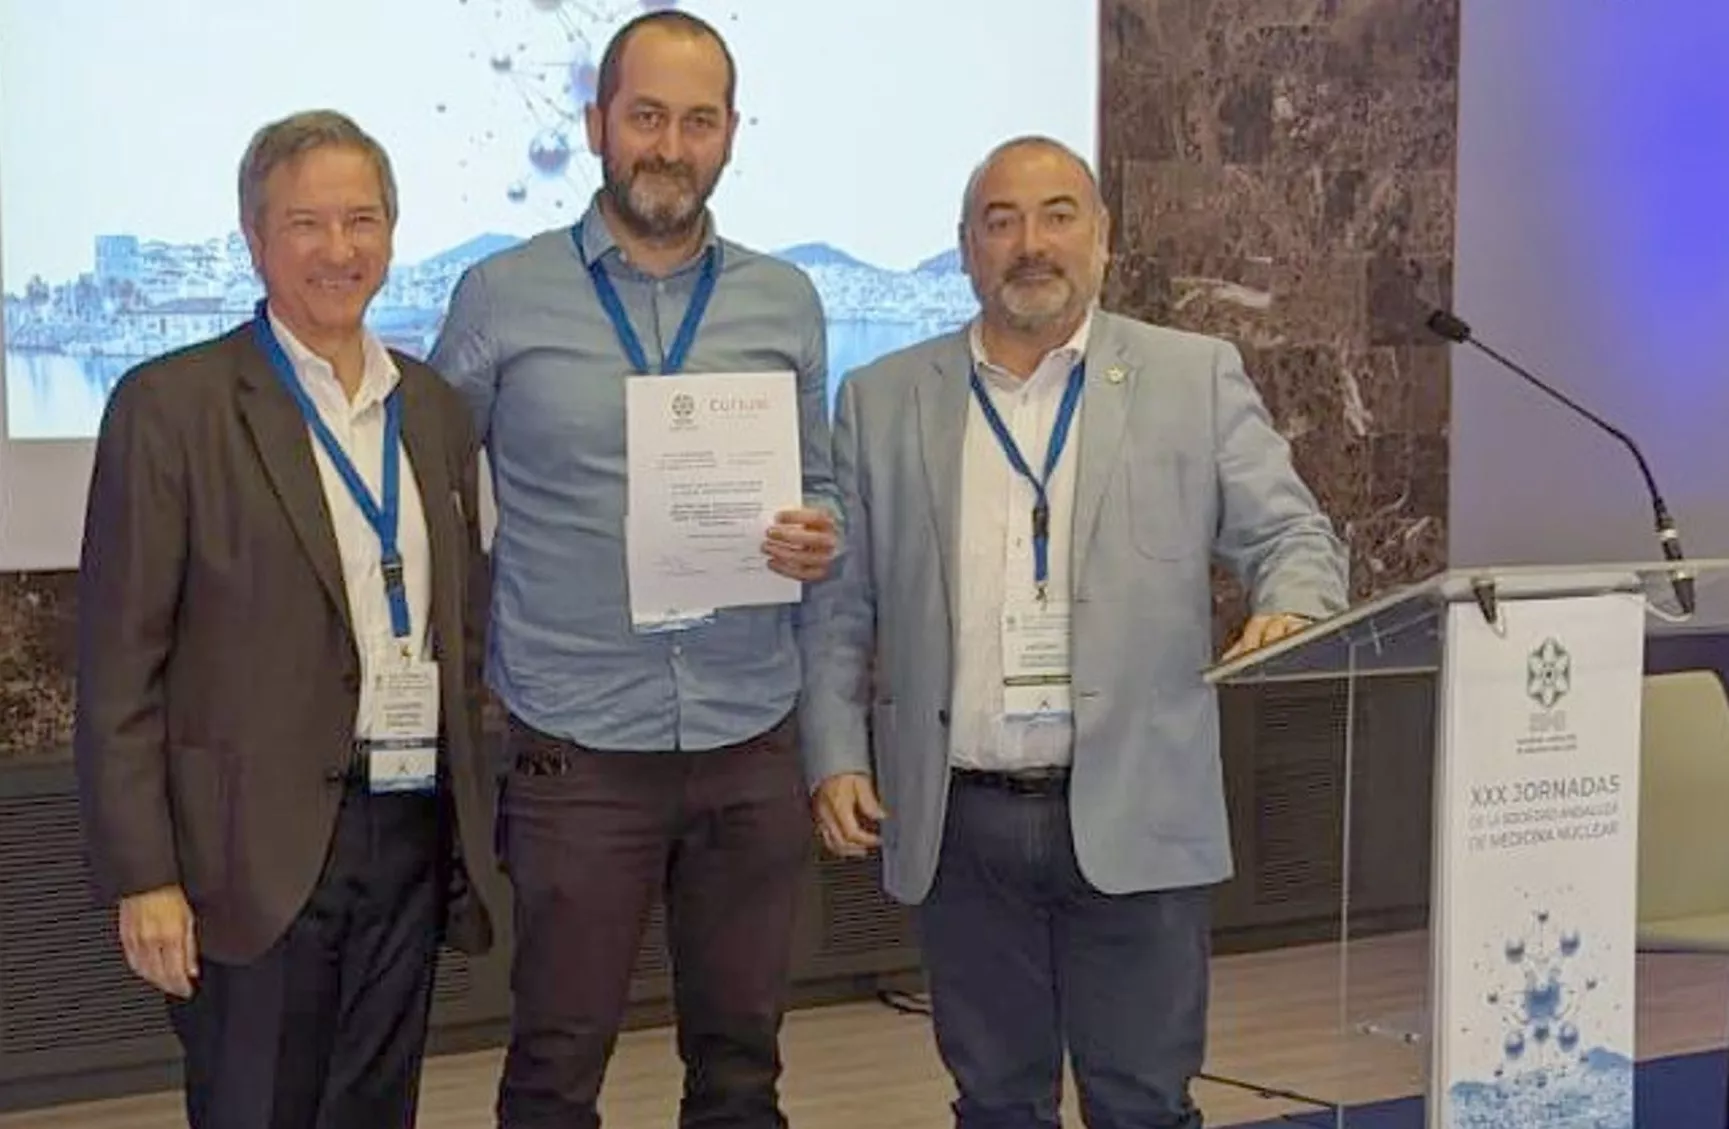 El reconocimiento se efectuó en la reunión anual de la Sociedad Andaluza de Medicina Nuclear de Marbella